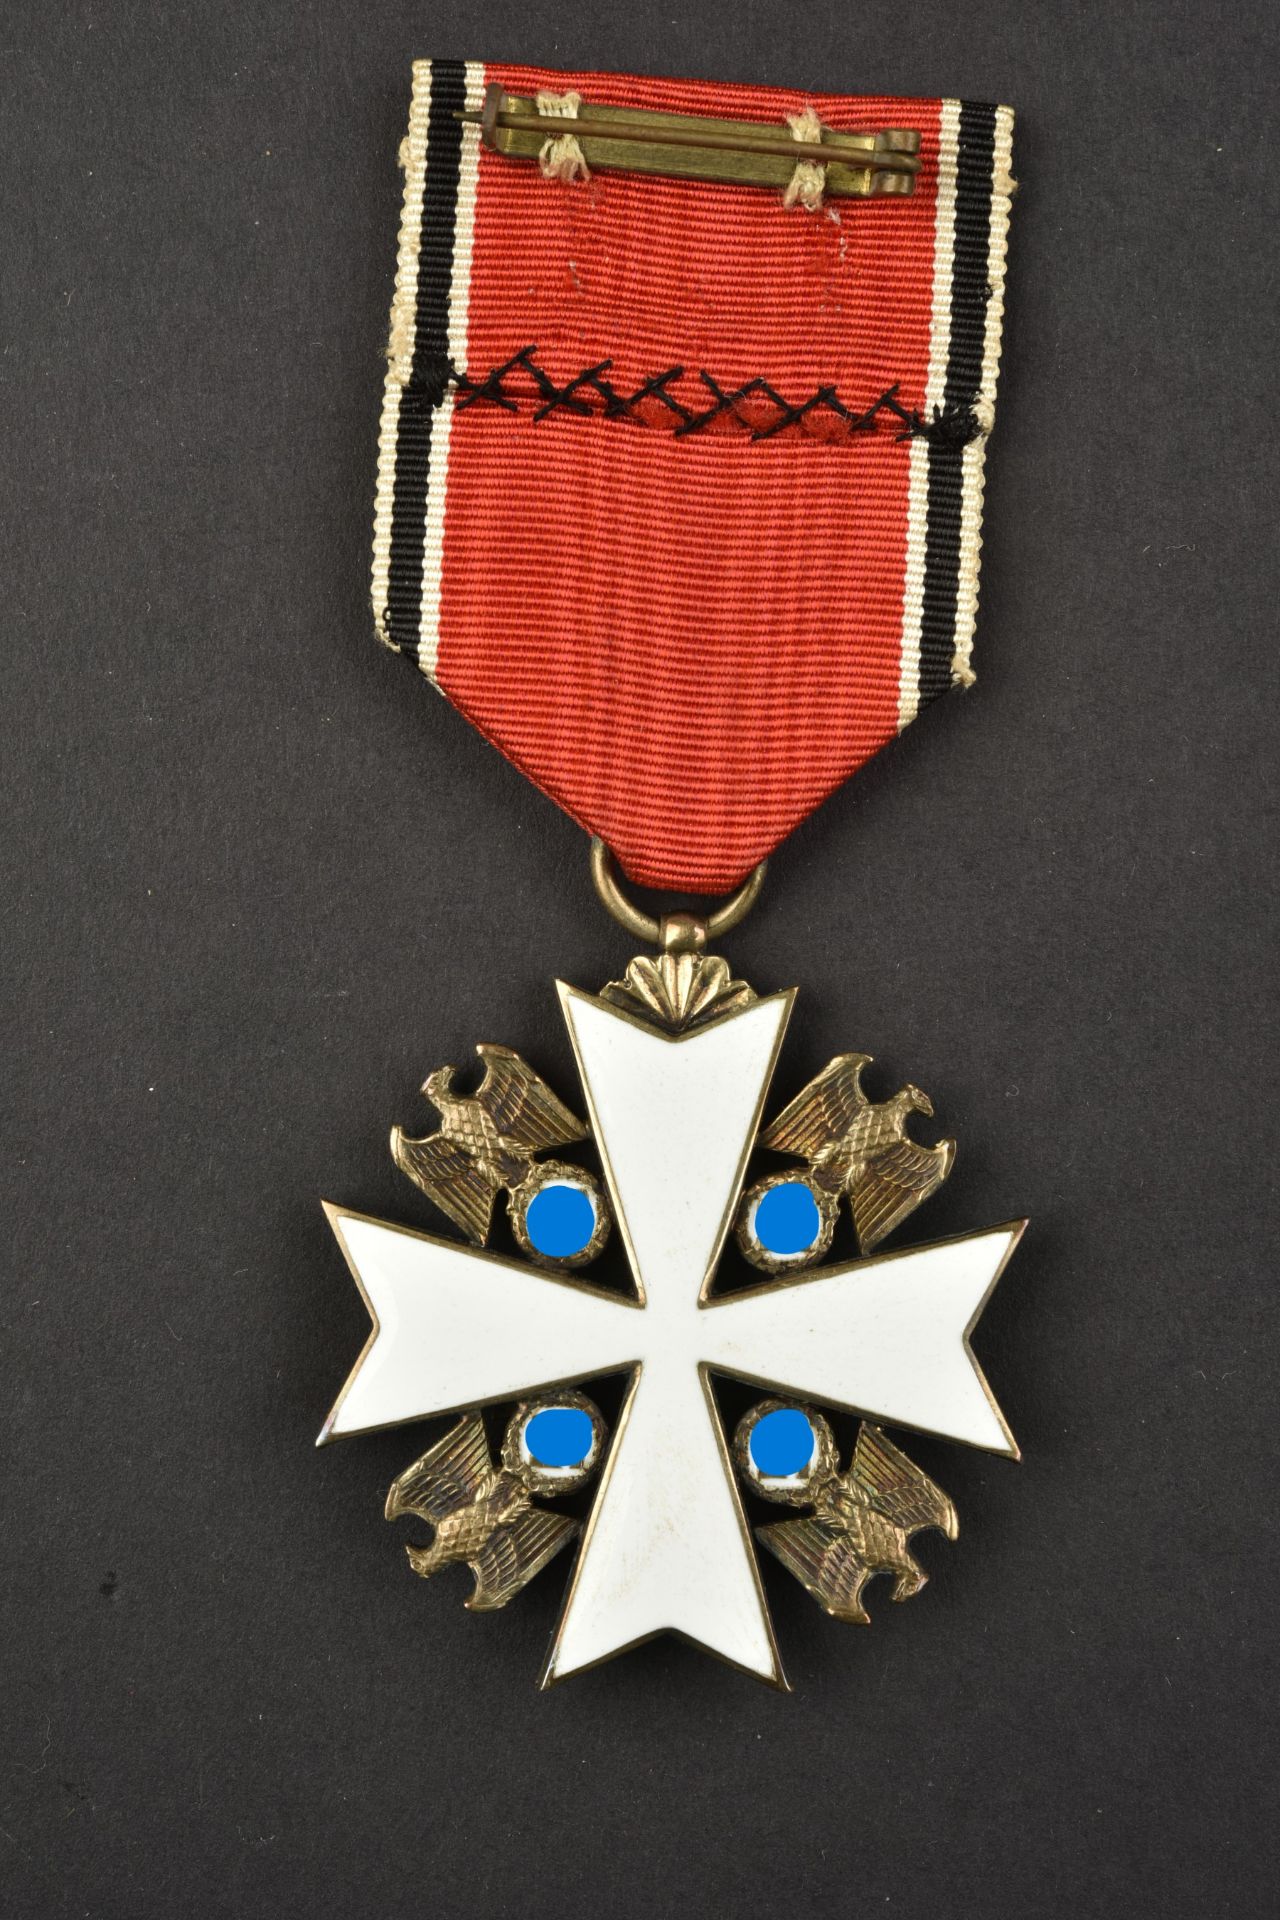 Medaille Deutsche Adler. Deutsche Adler medals. - Image 3 of 8